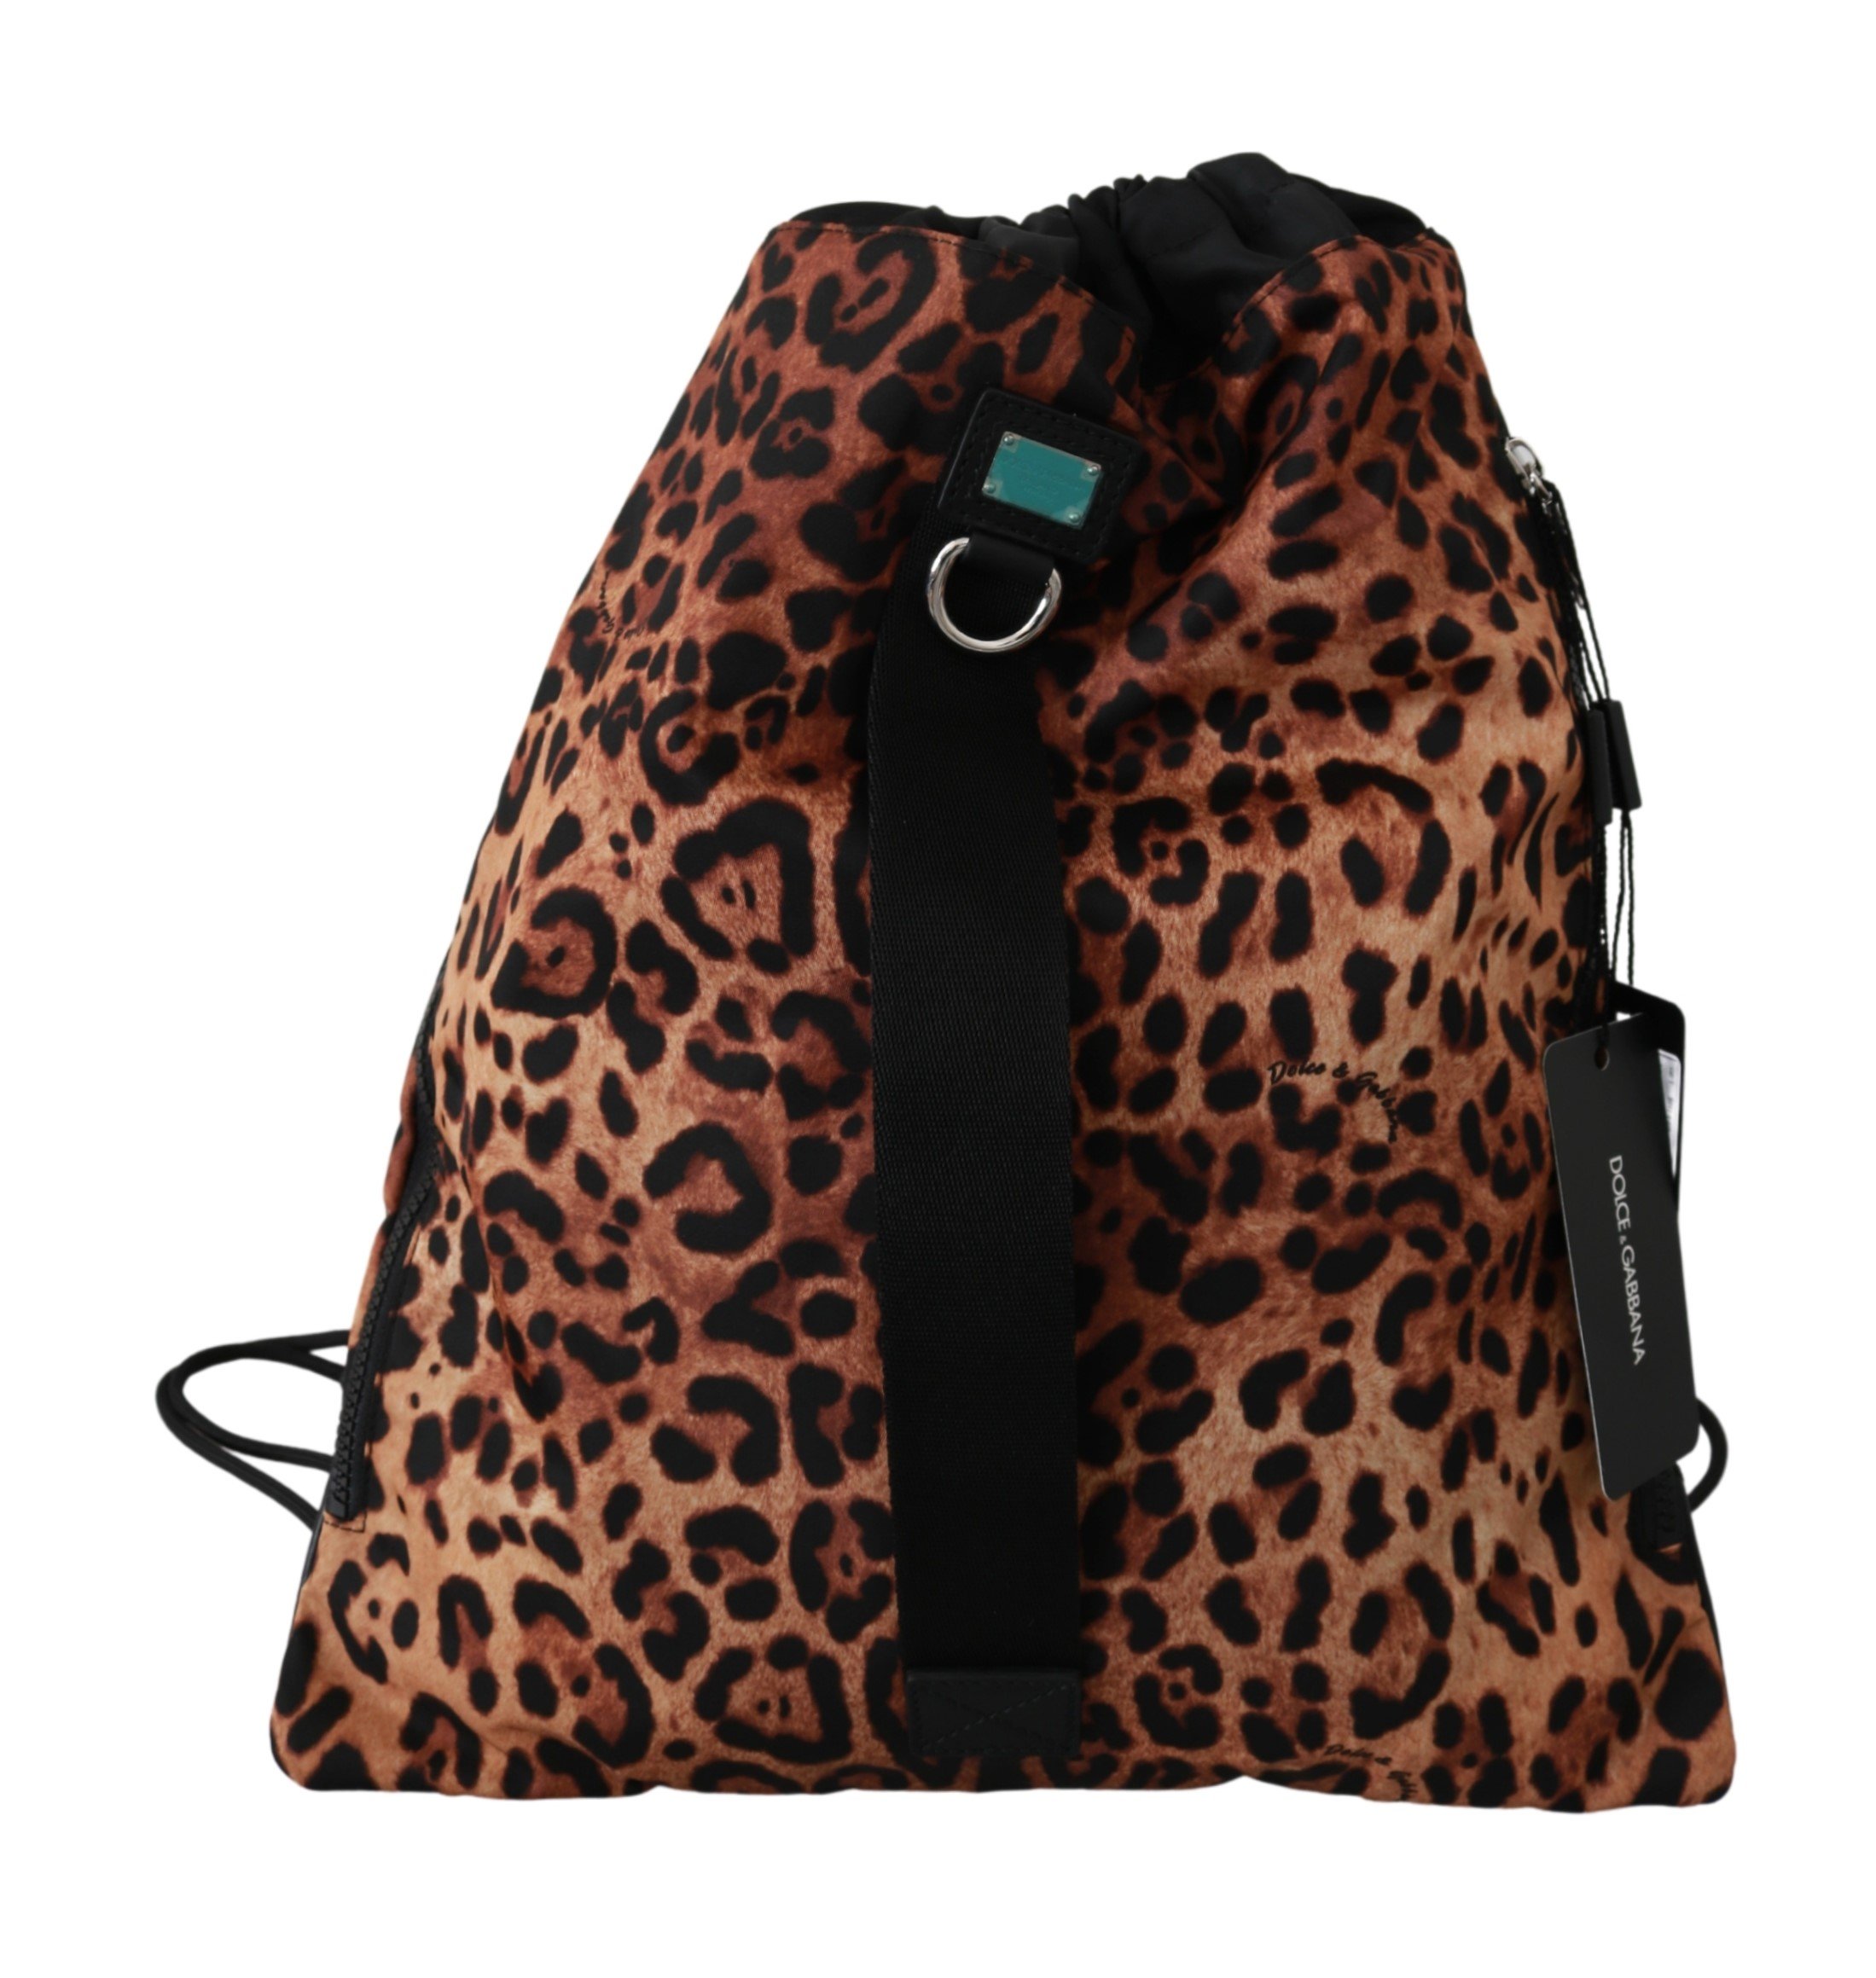 Dolce & Gabbana Women's Leopard Napsack Nylon Backpack Brown VAS9226